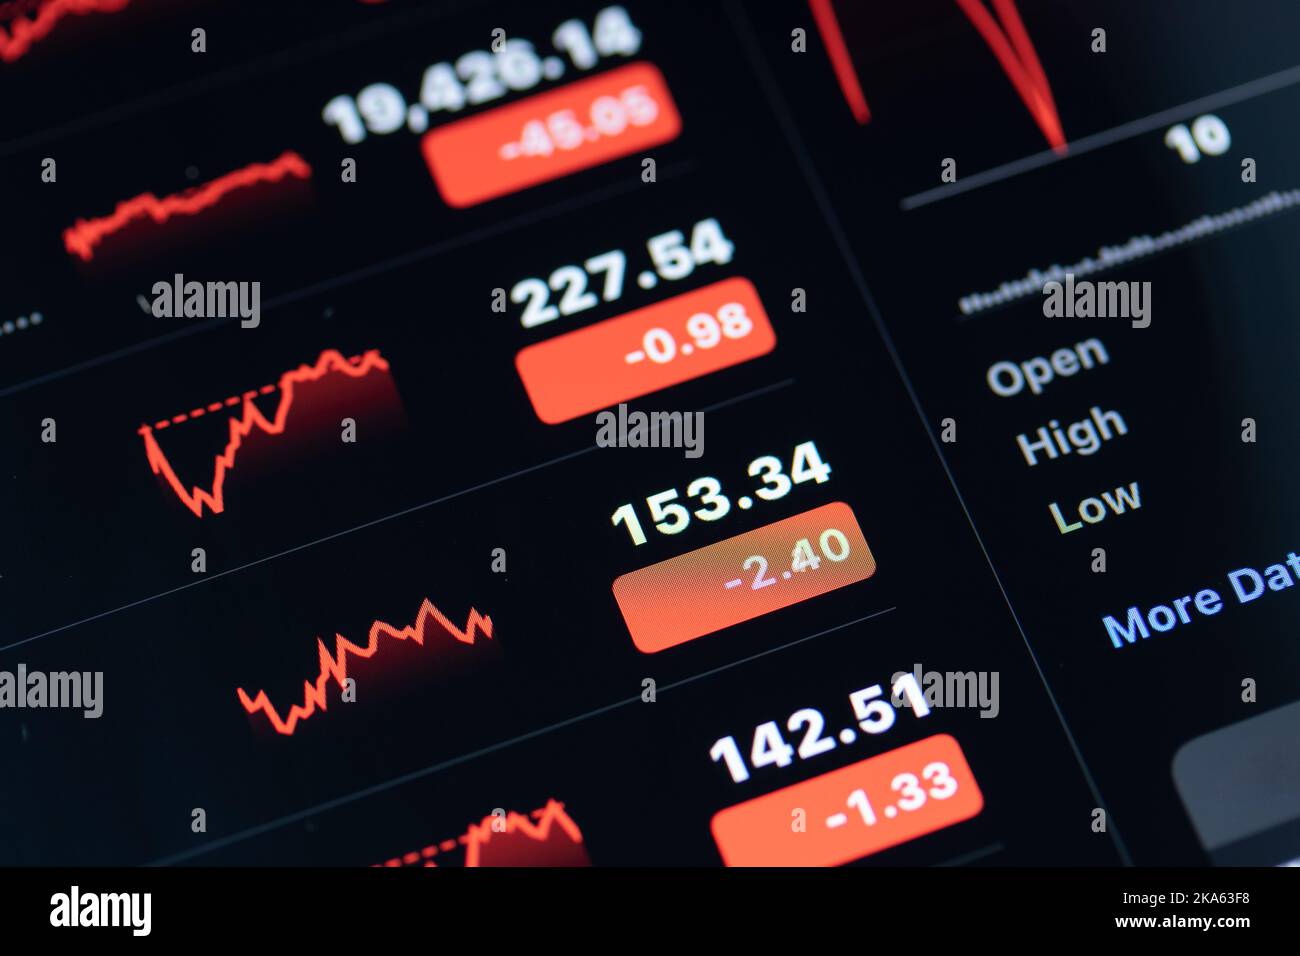 Les listes, les chiffres et les graphiques des marchés boursiers rouges sont affichés sur un écran numérique. Banque D'Images